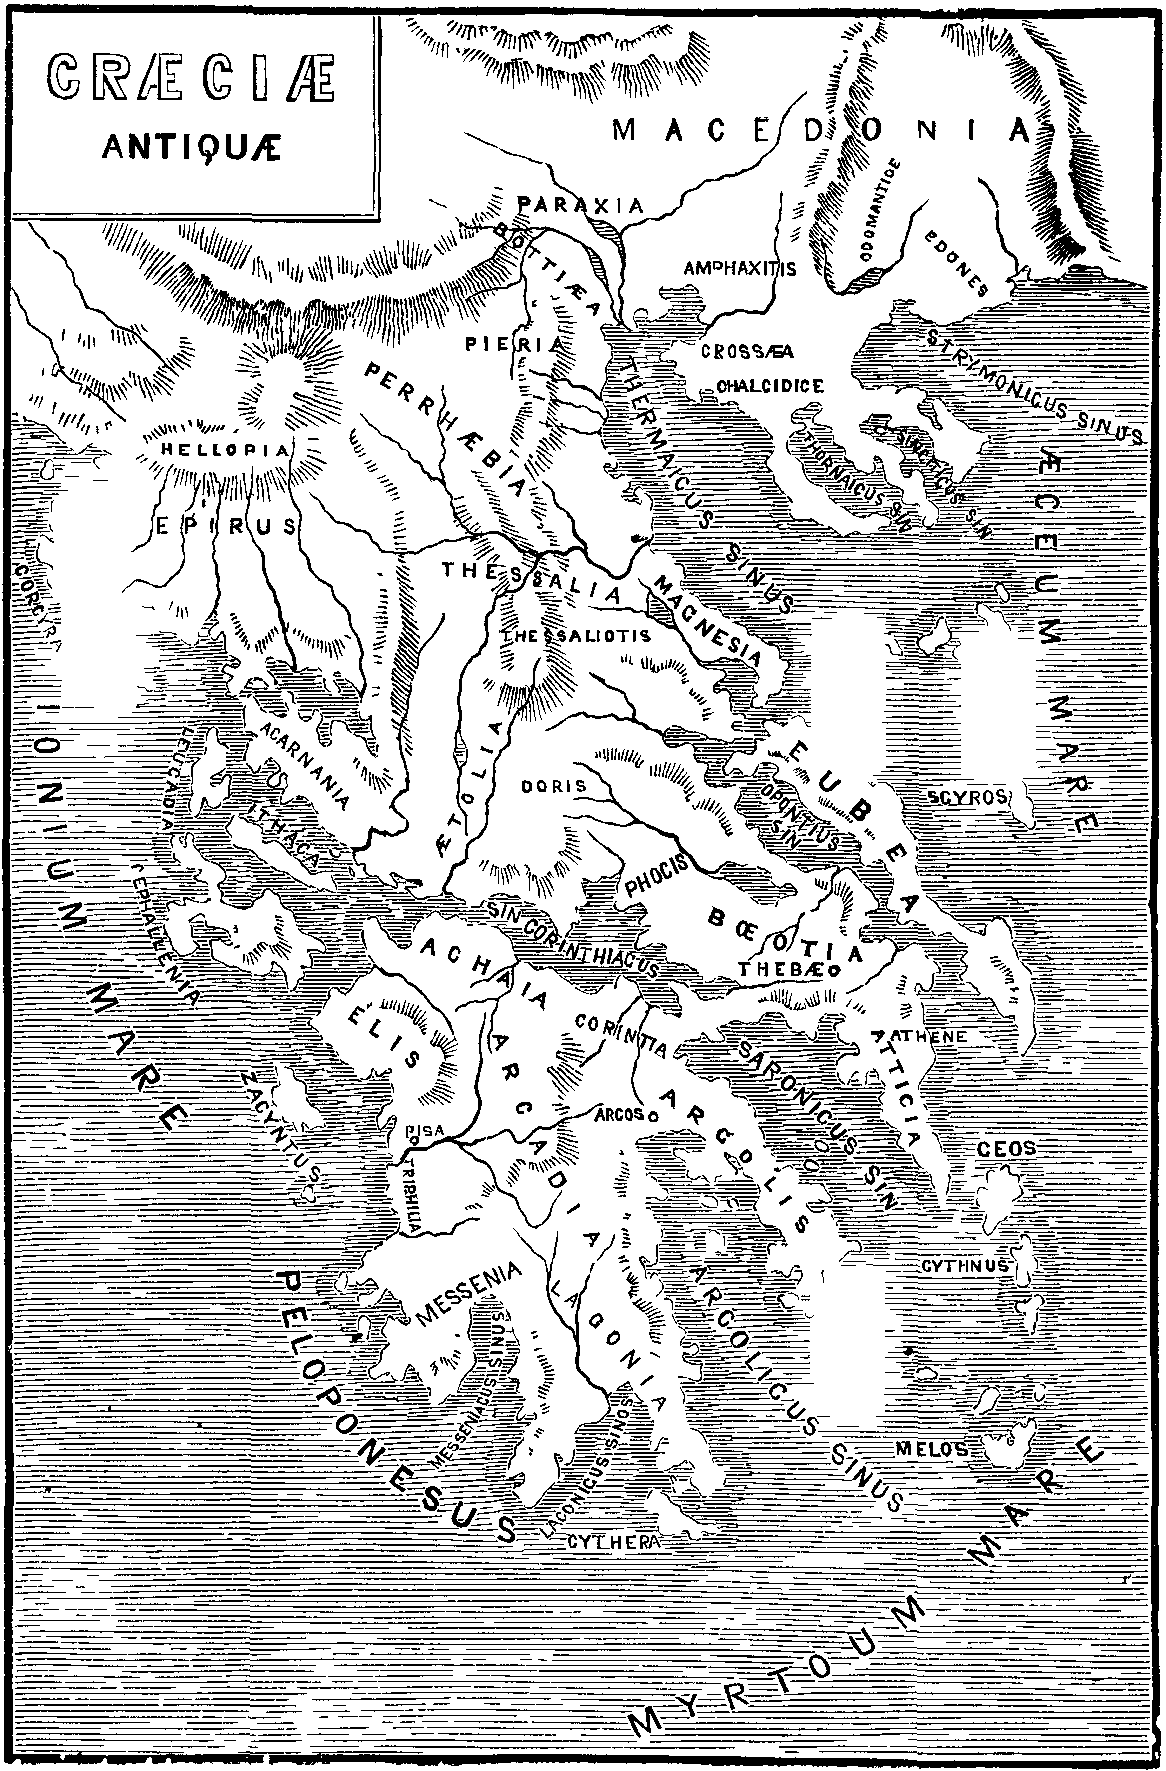 Illustration: Map, titled "Graeciae Antiquae".